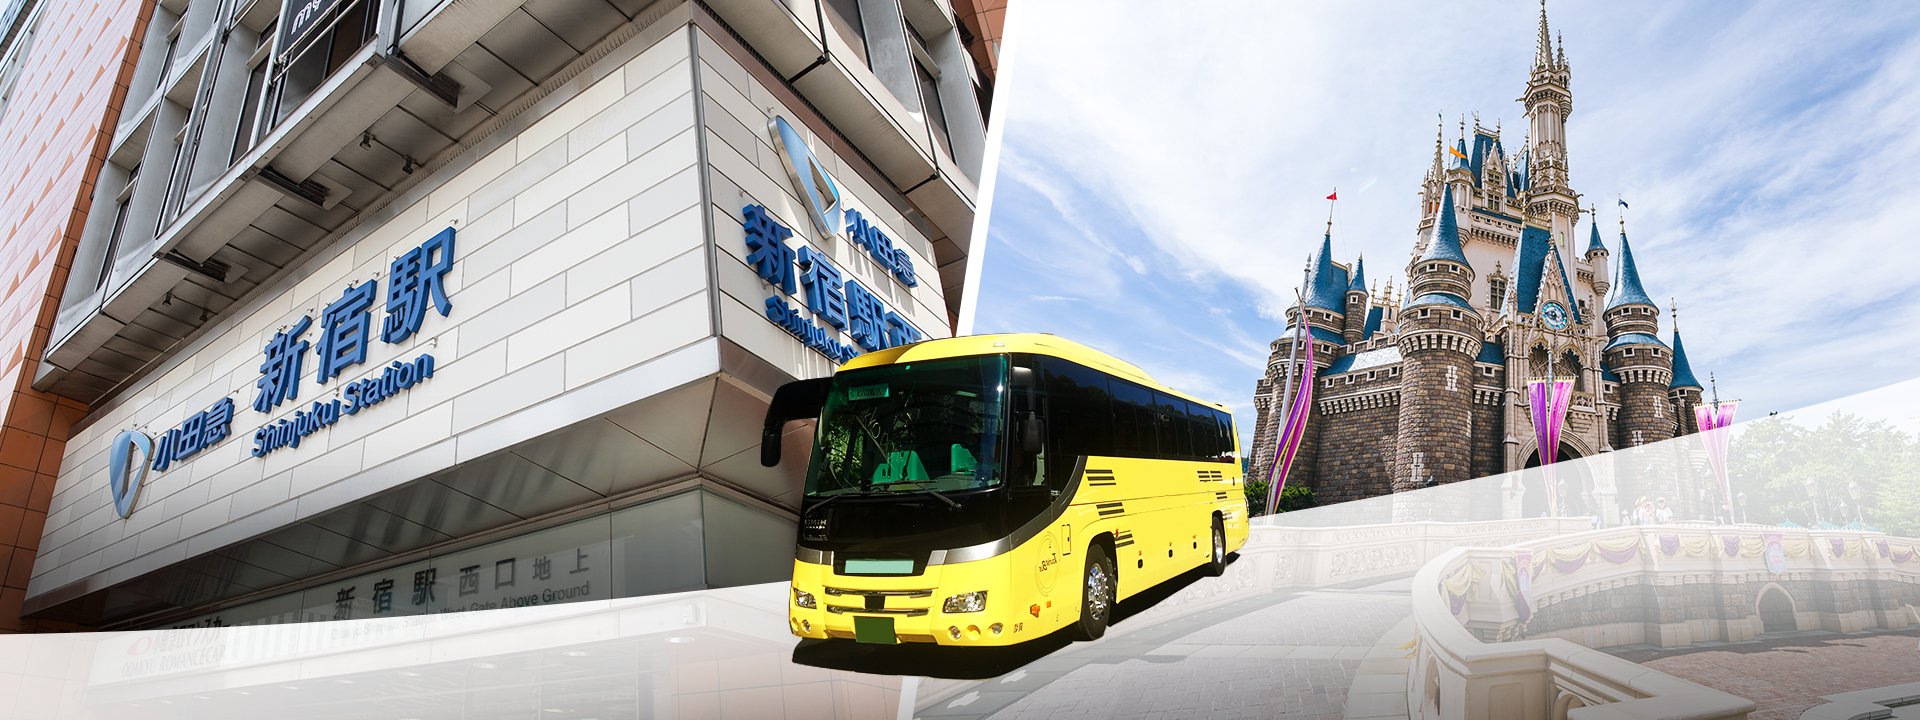 Tokyo Shinjuku - Tokyo Disneyland/DisneySea Shuttle Bus